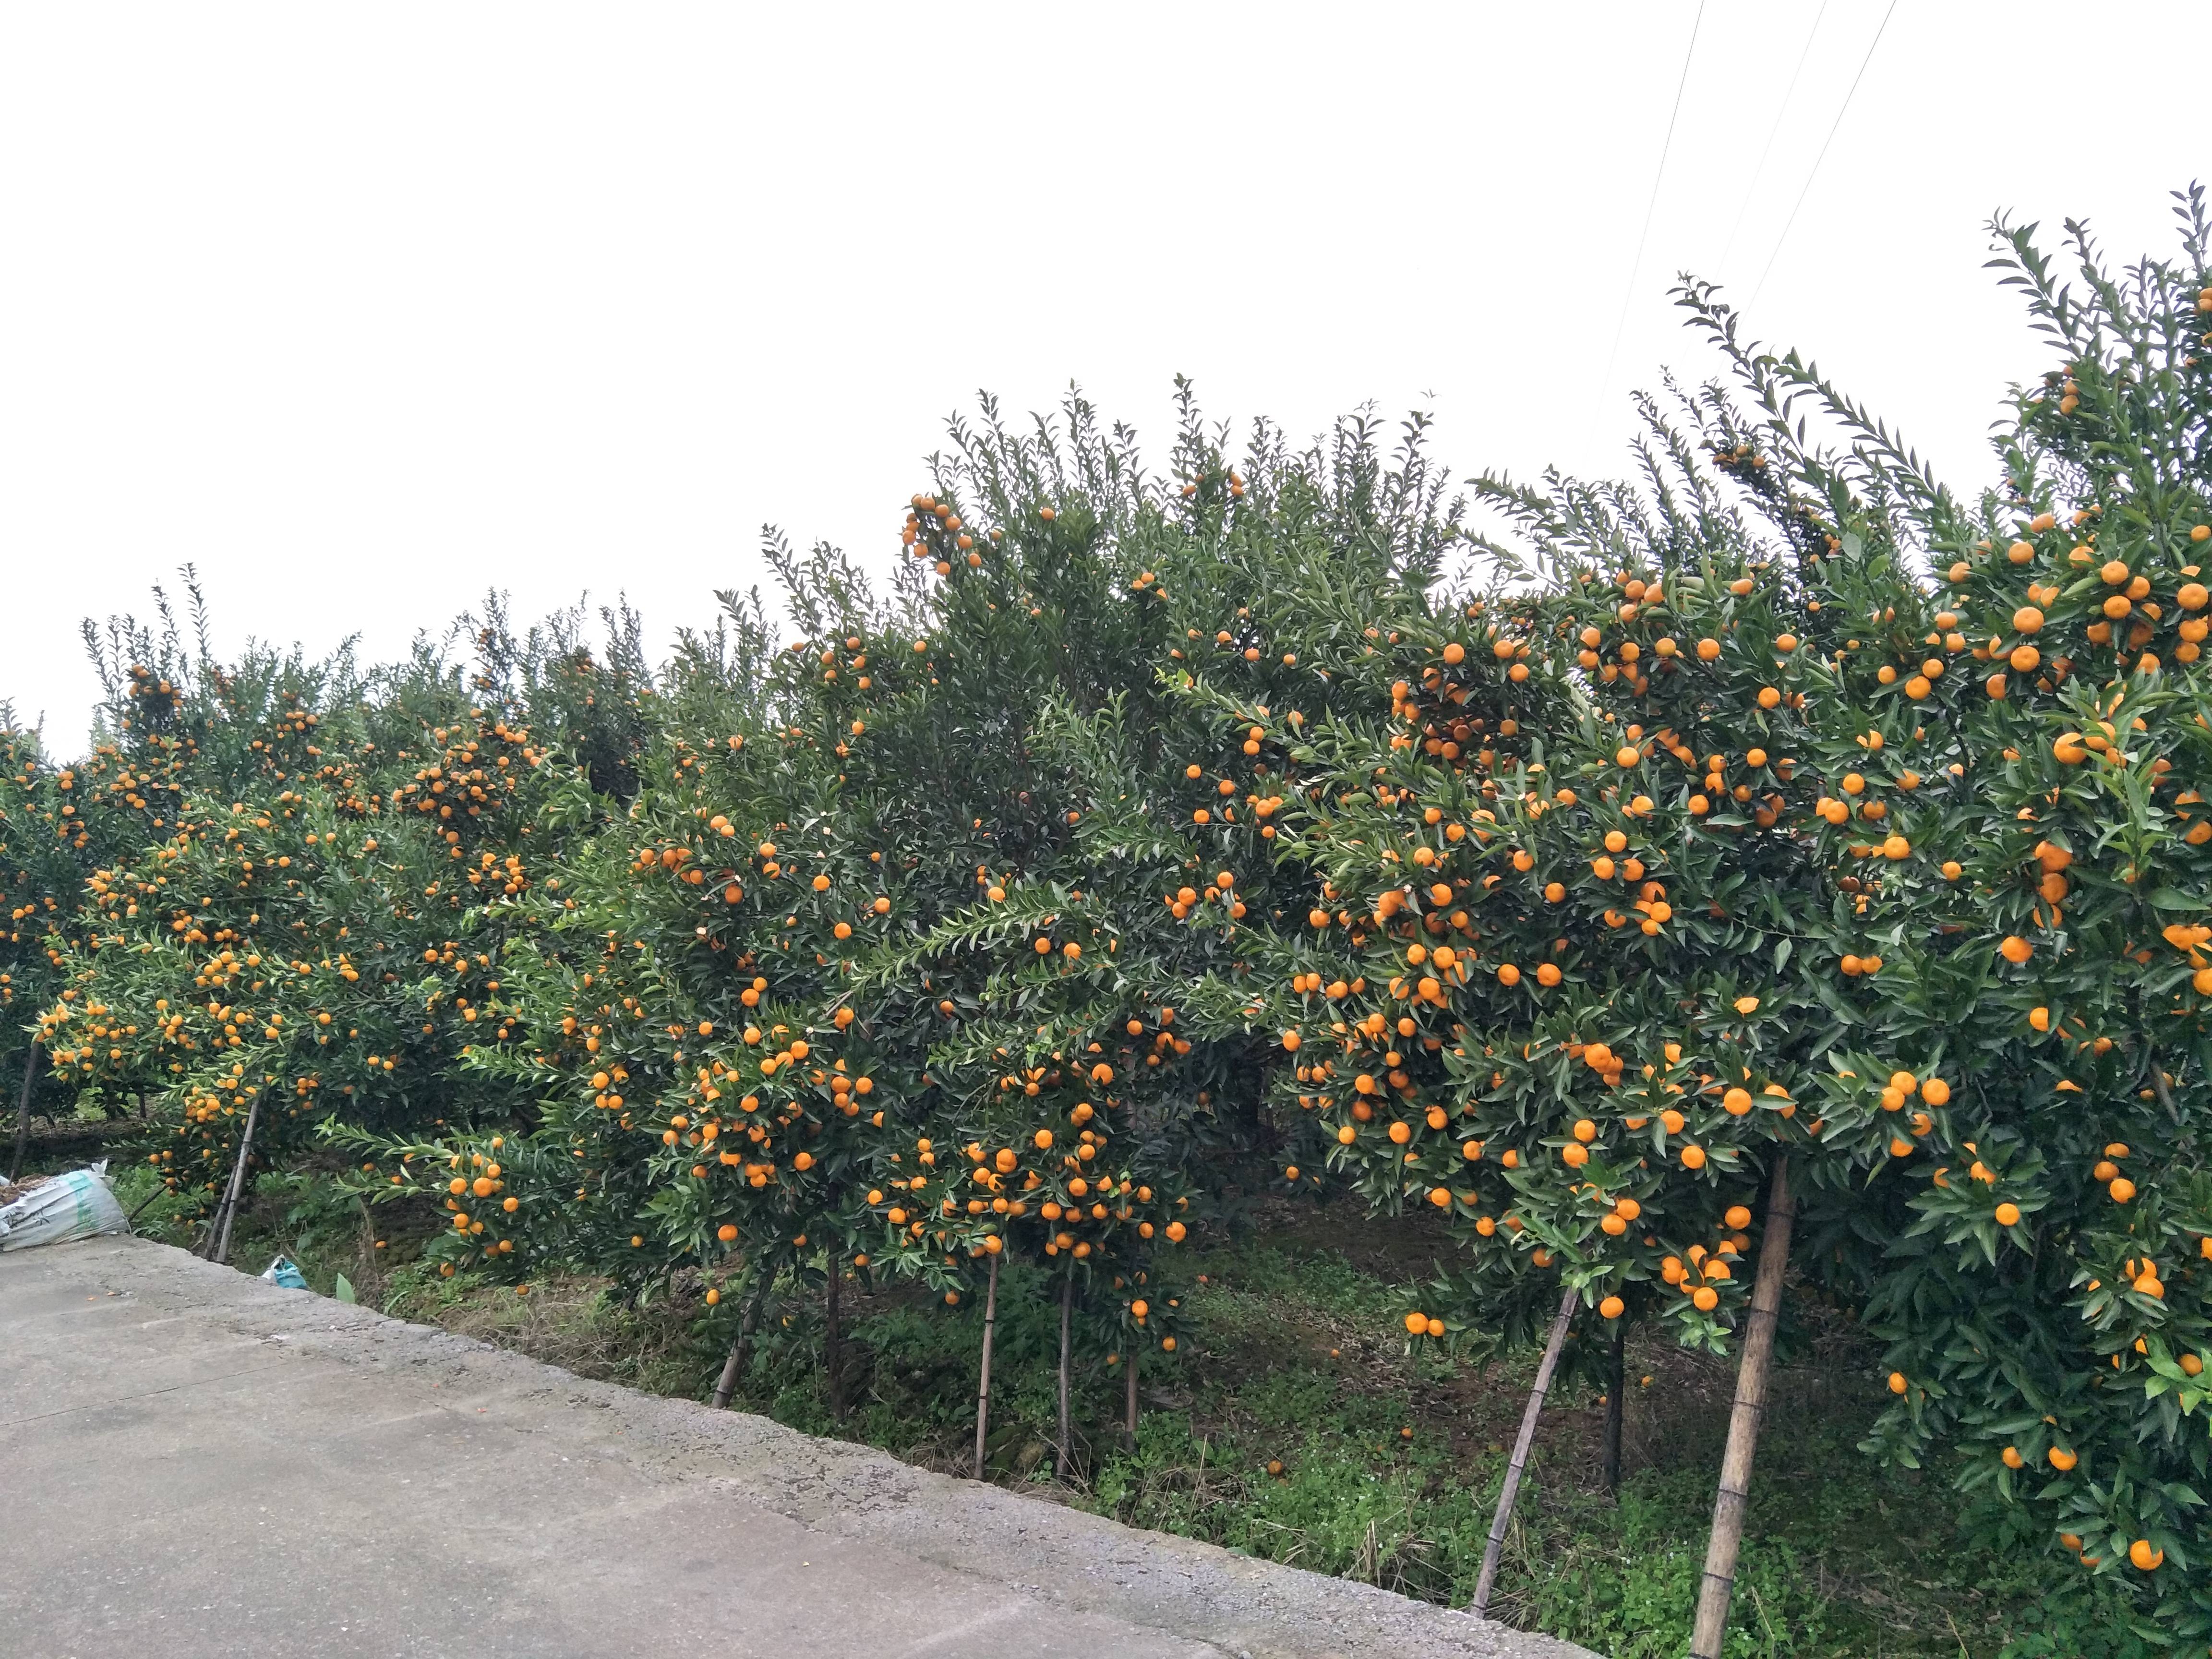 桂林市灵川县
马水橘开园了，约10万斤；
还有茂谷柑...